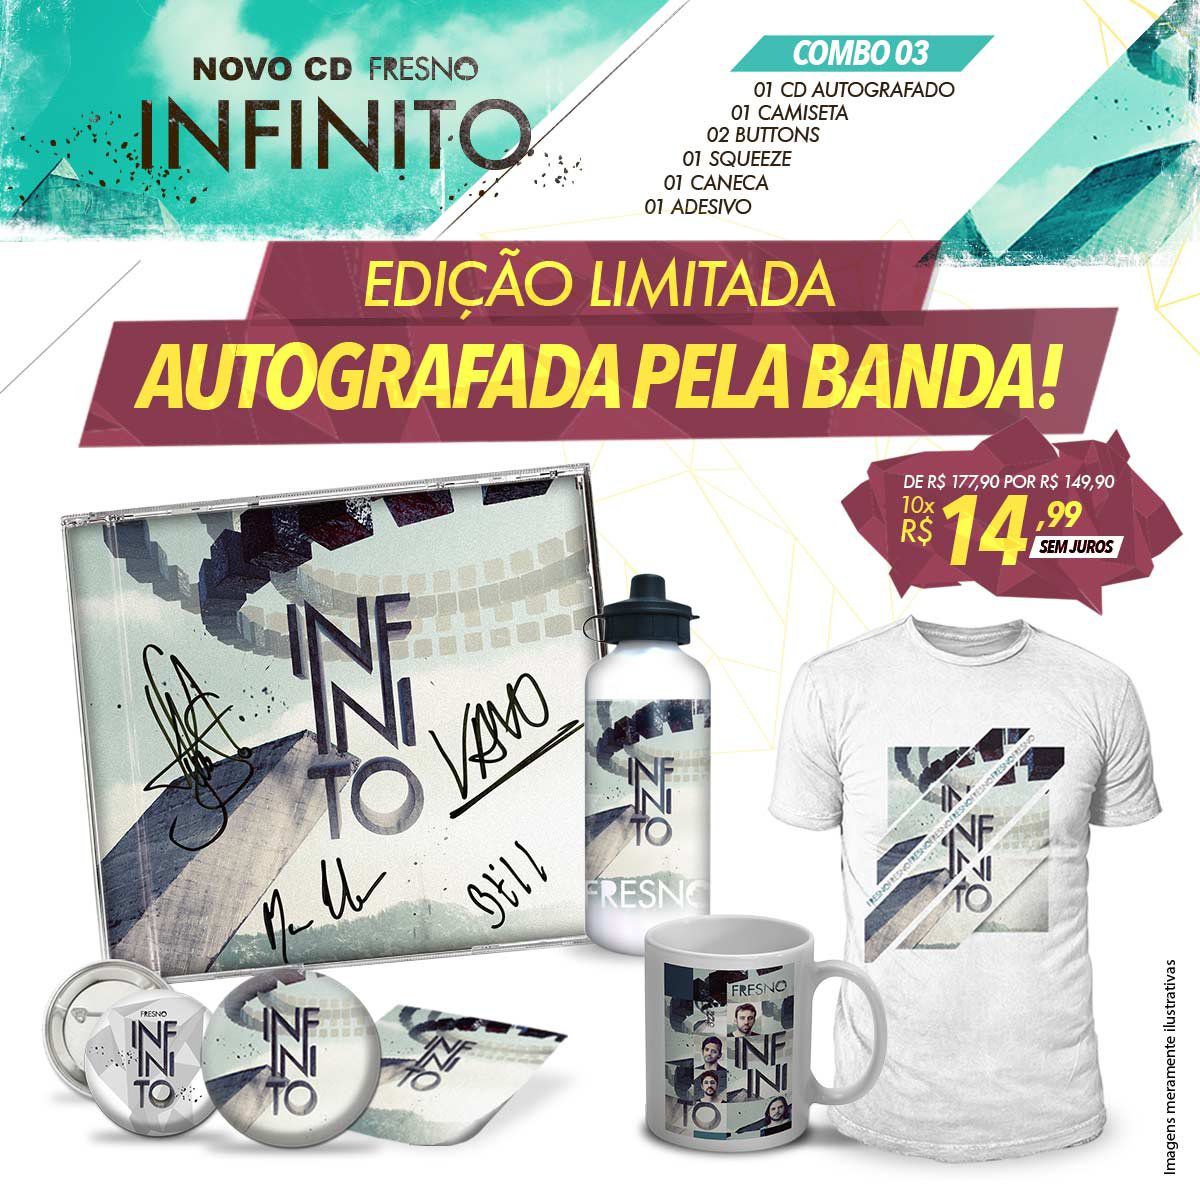 Combo Fresno Infinito - CD Autografado + Button + Adesivo + Camiseta + Squeeze + Caneca Branca